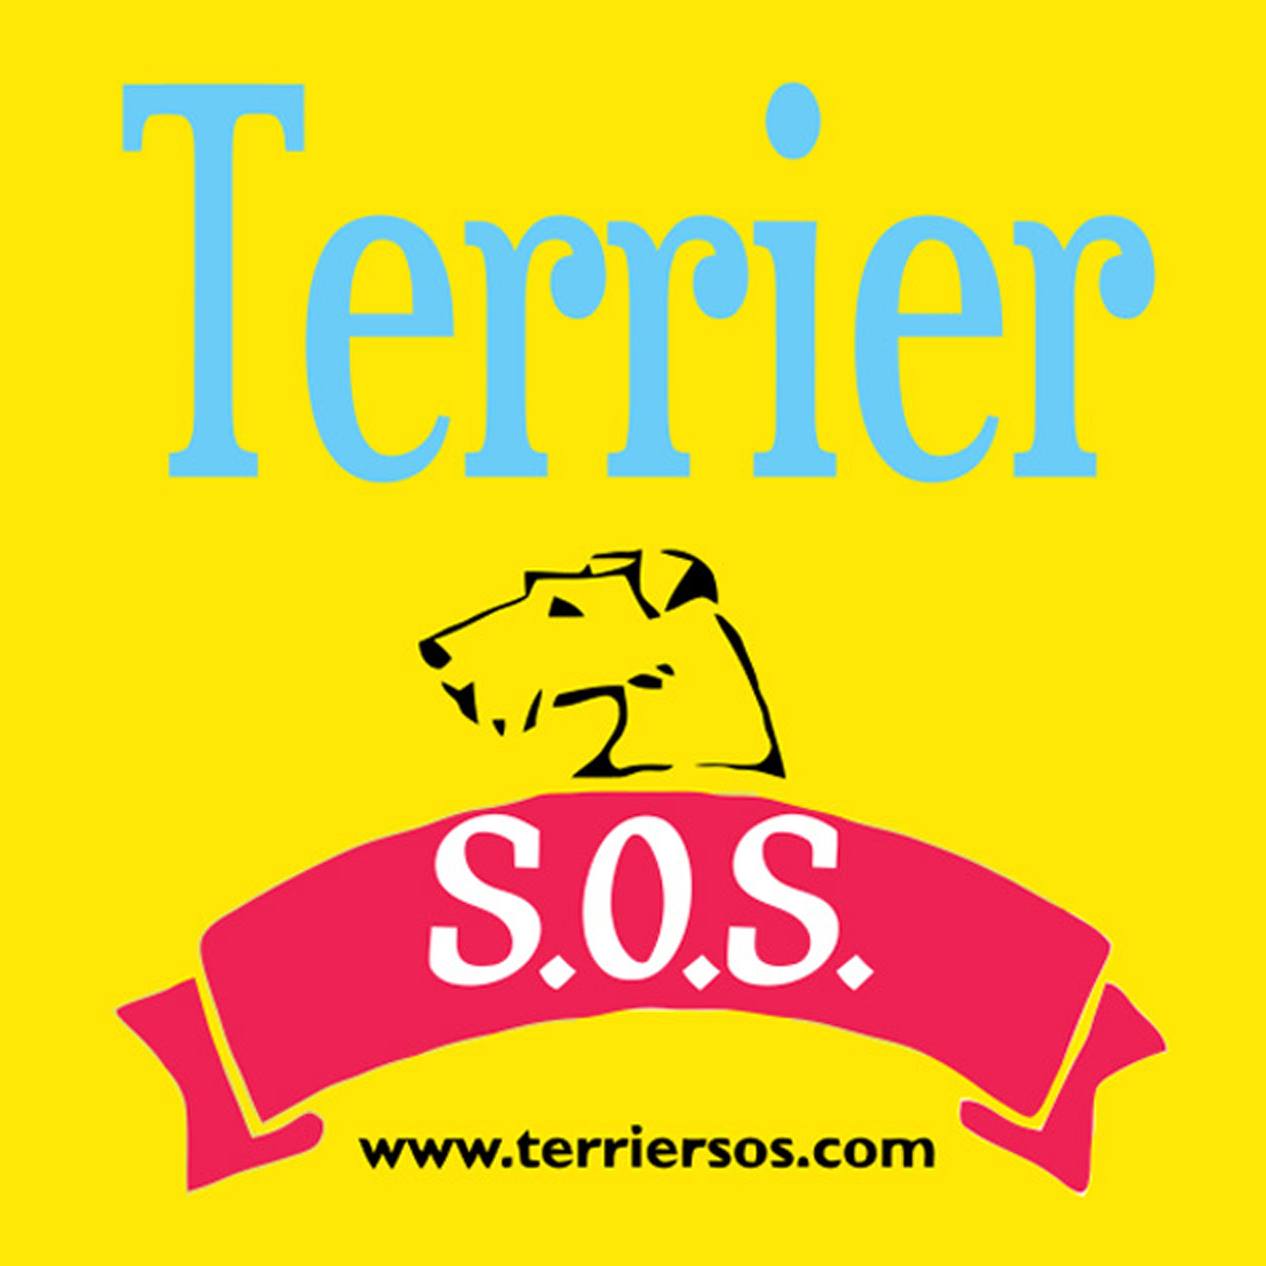 Terrier SOS